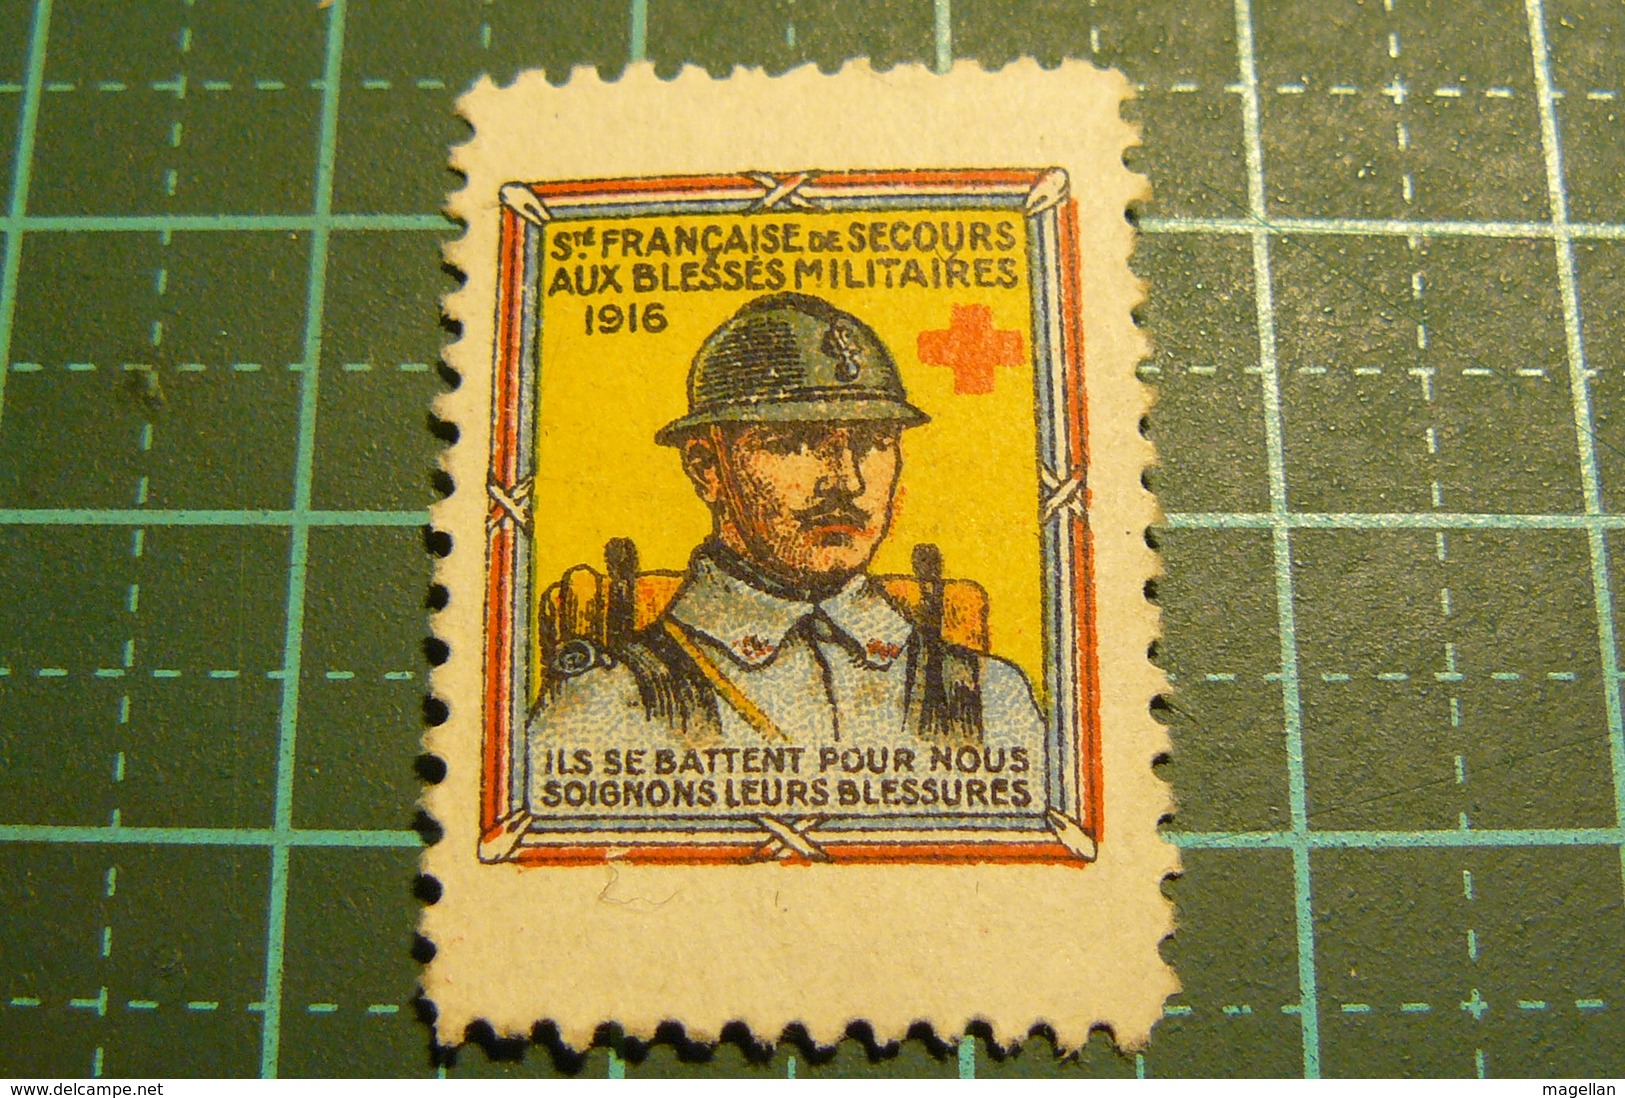 Erinnophilie - Société Française De Secours Aux Blessés Militaires - 1916 - Première Guerre Mondiale - Military Heritage